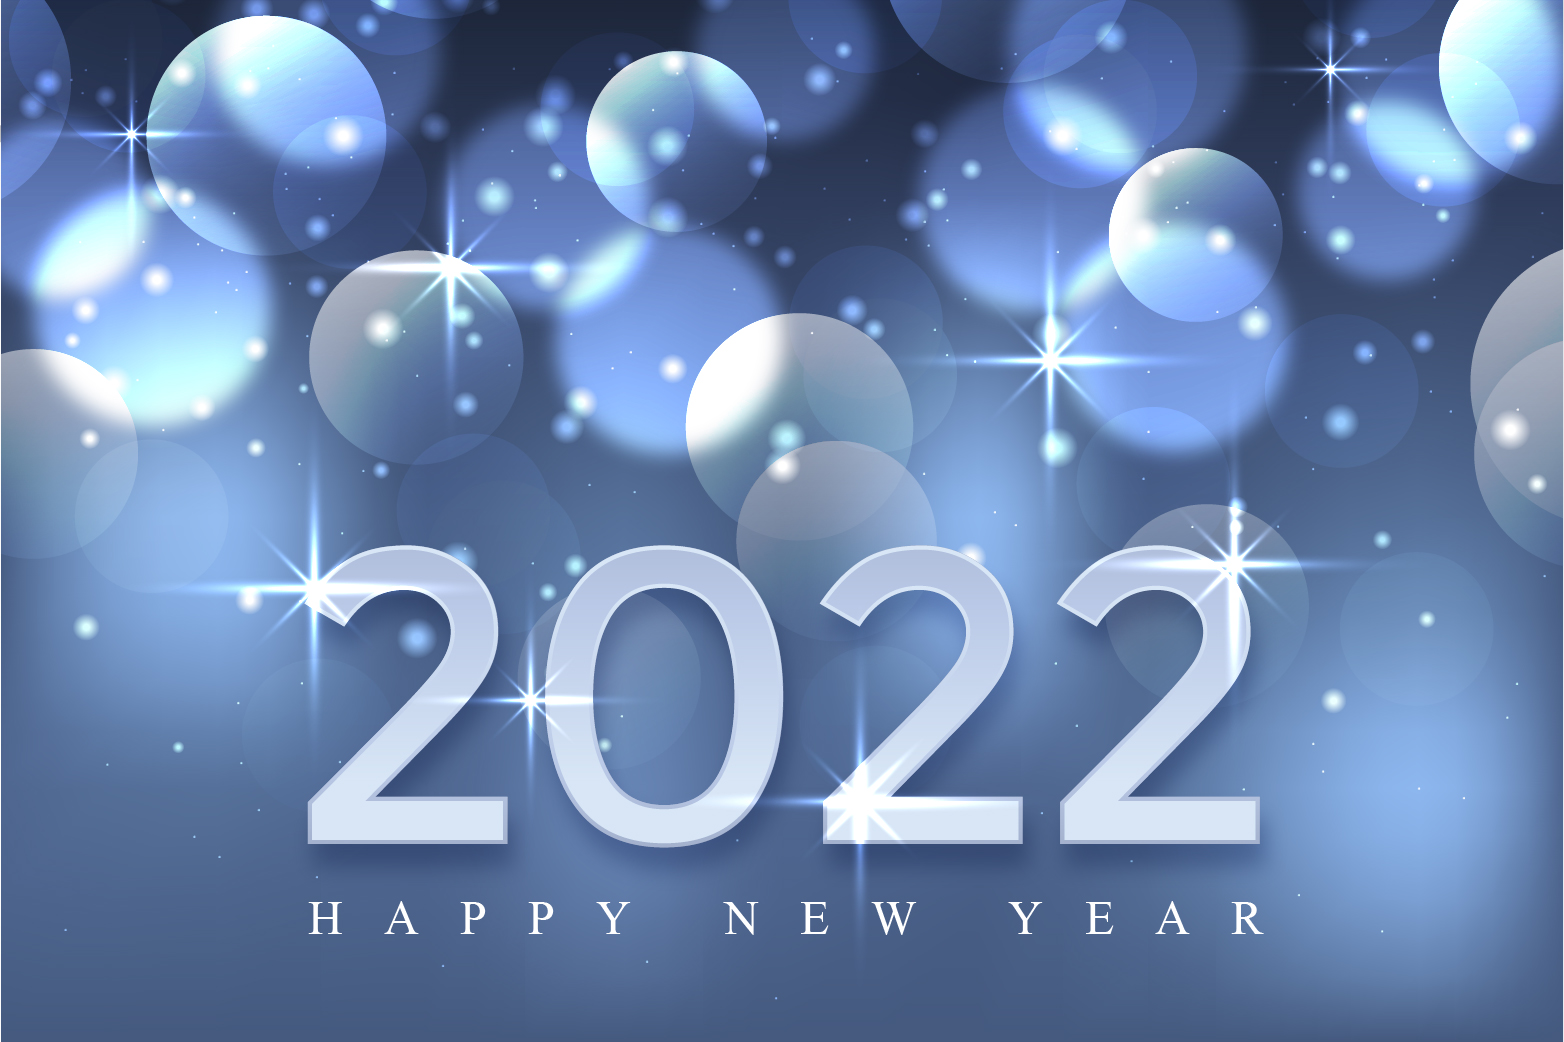 Hình ảnh chúc mừng năm mới Tết 2022 đẹp nhất